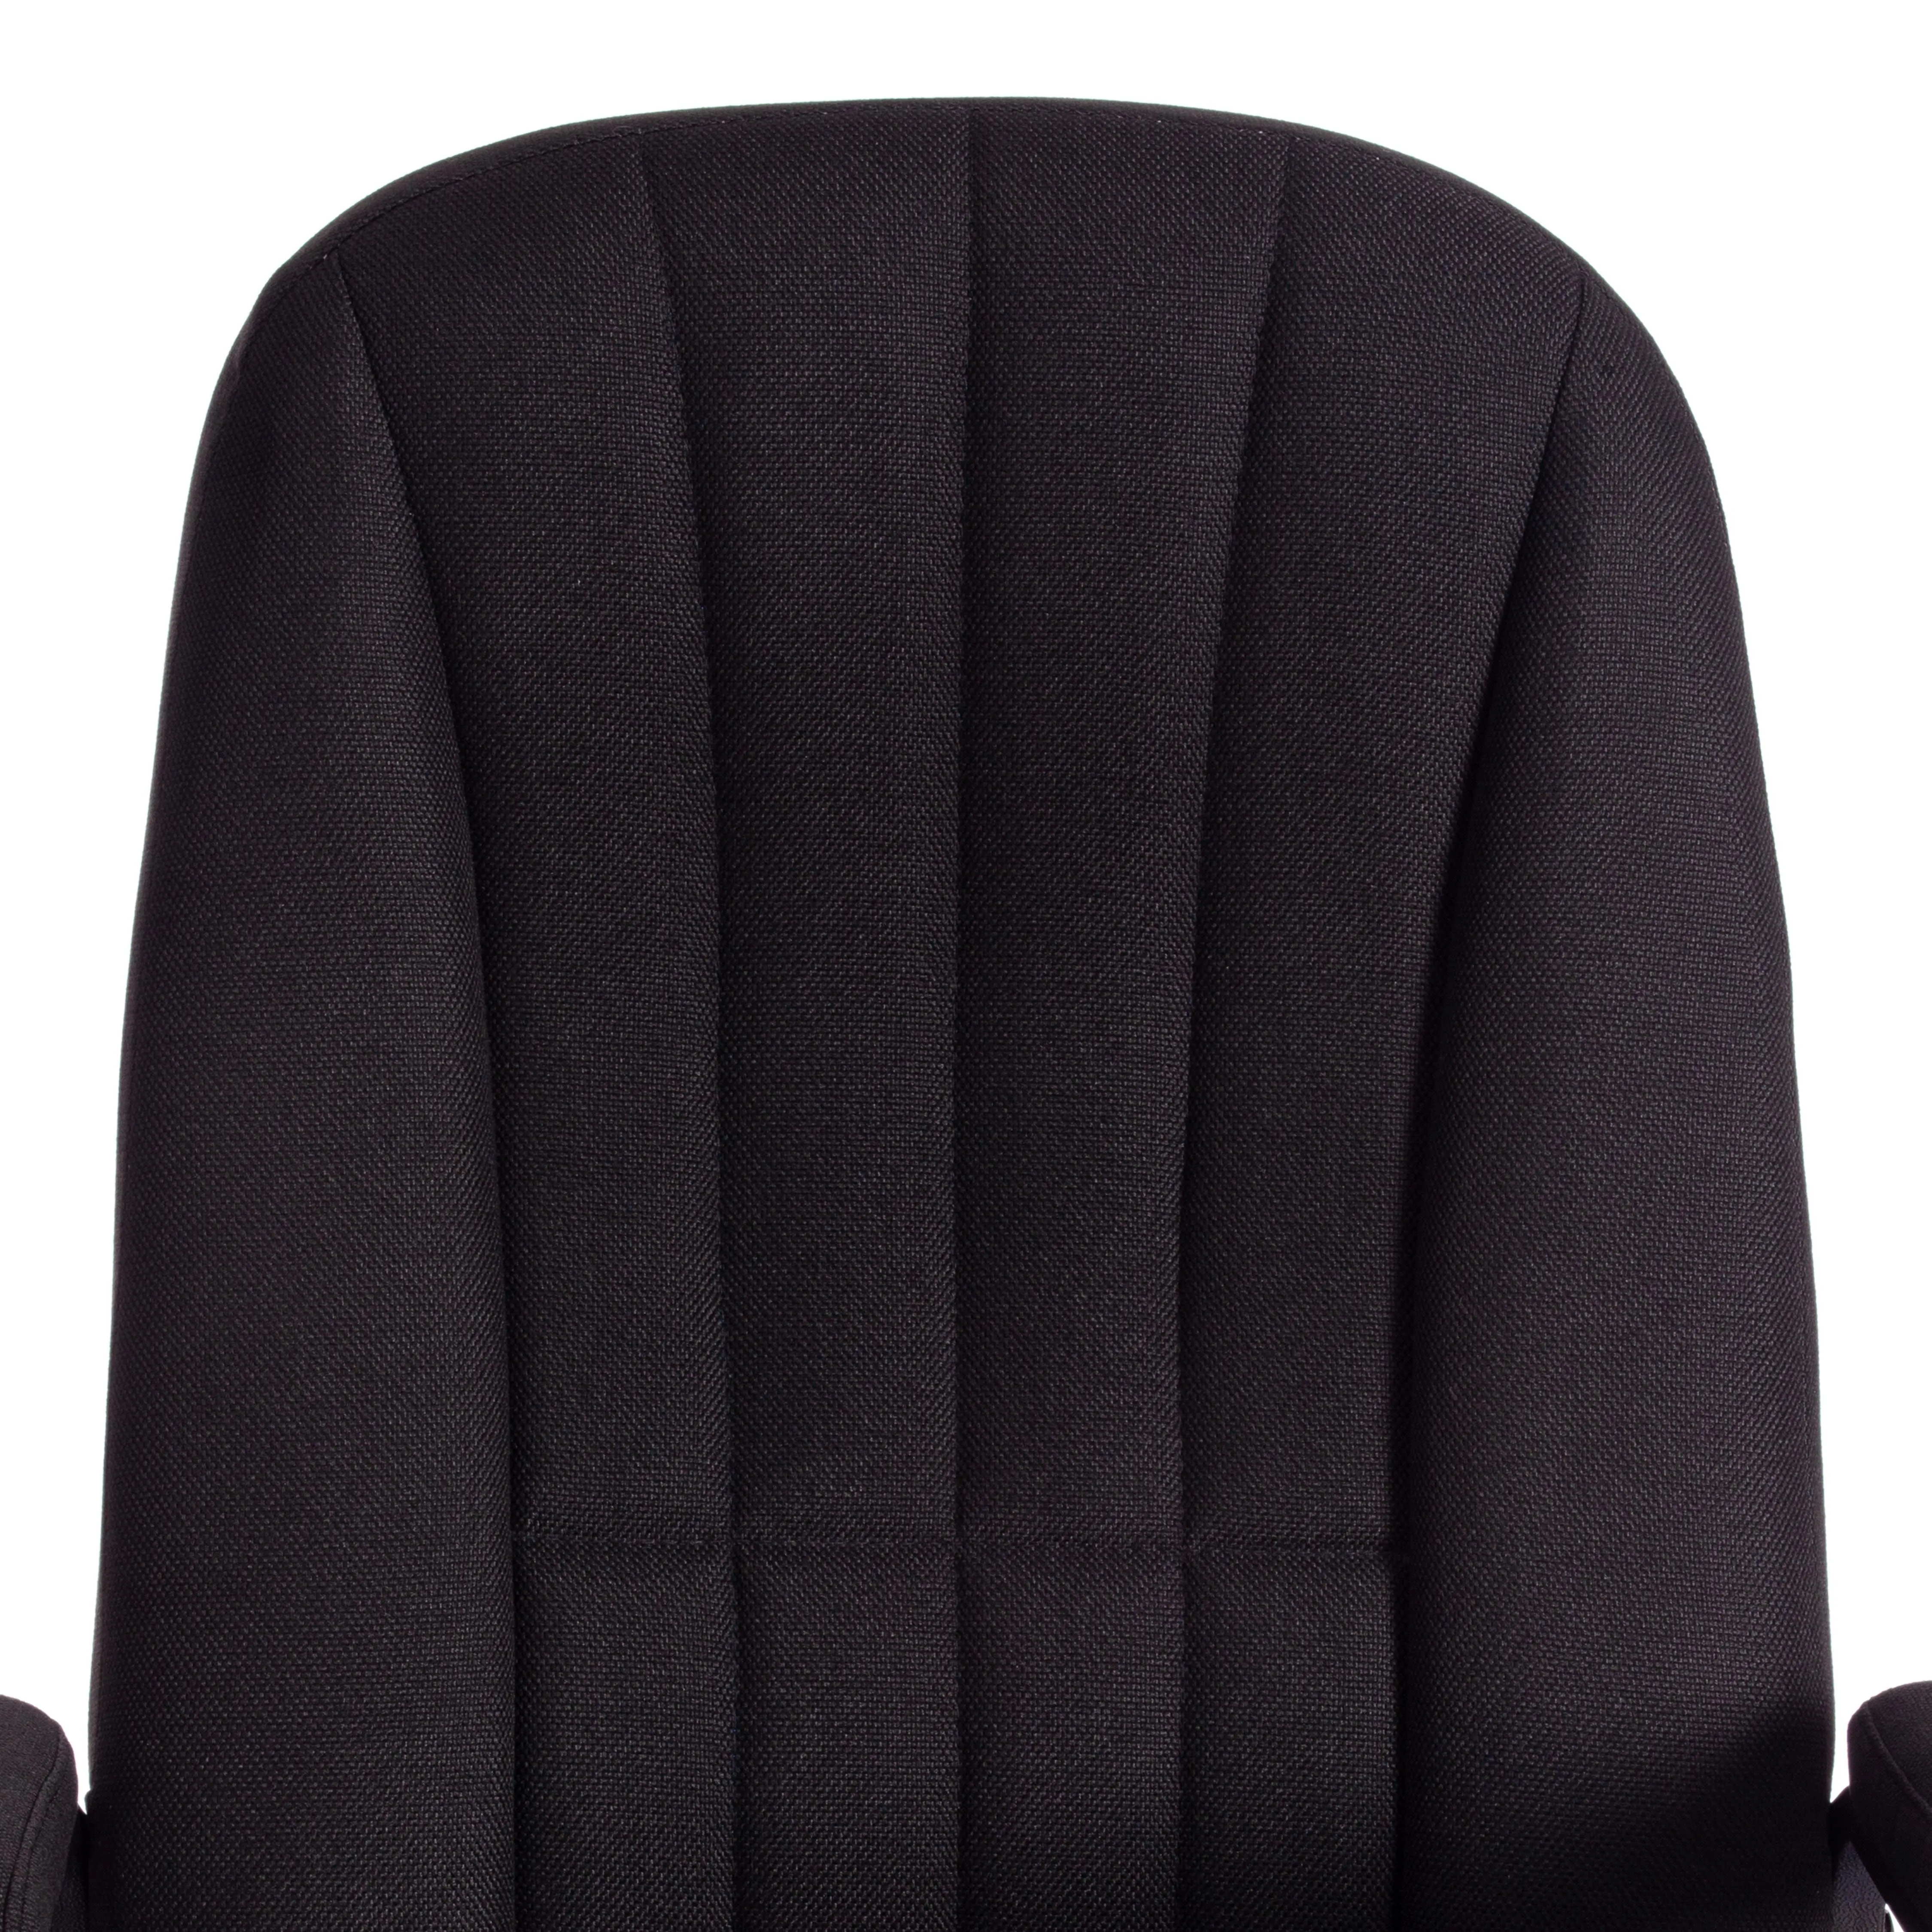 Кресло СН888 (22) ткань черный